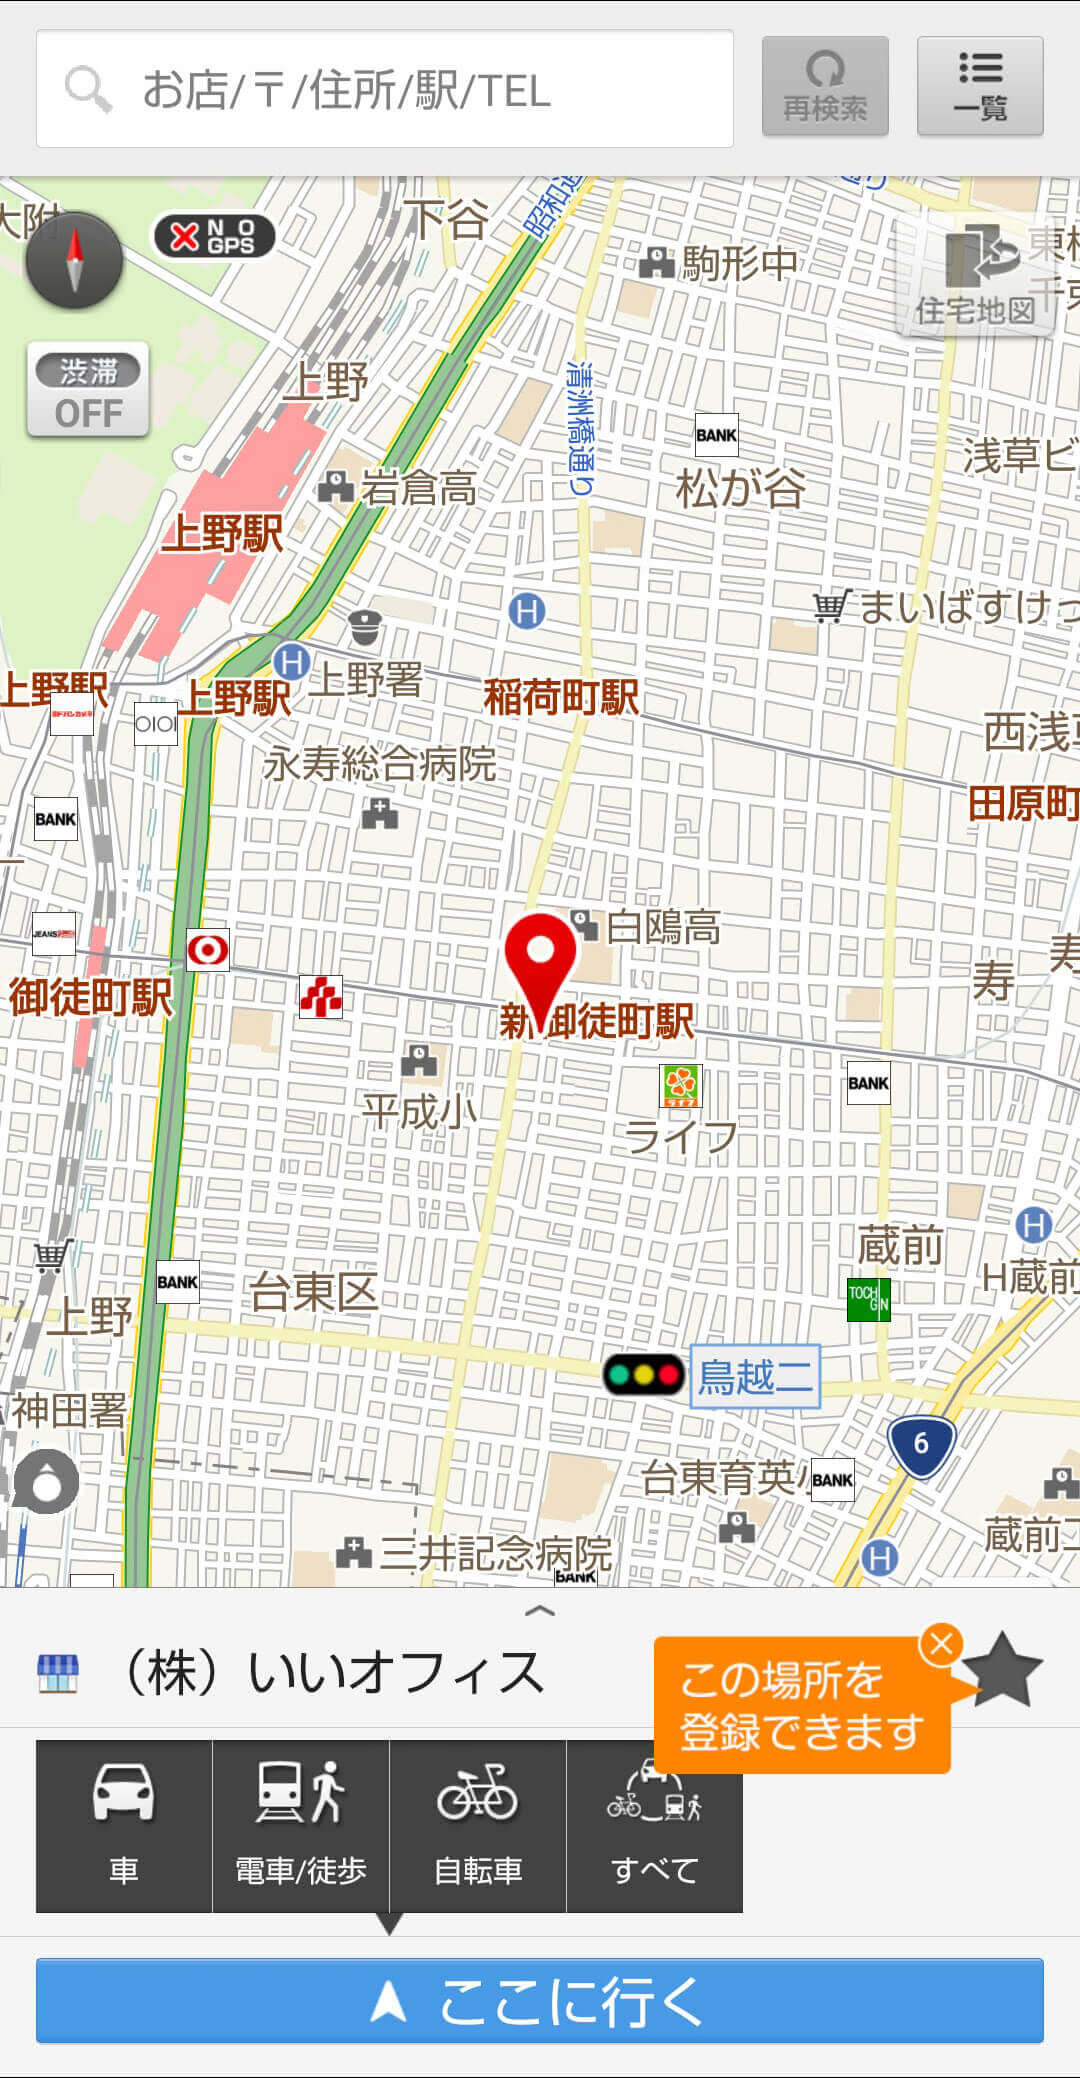 地図アプリのスクショ画像